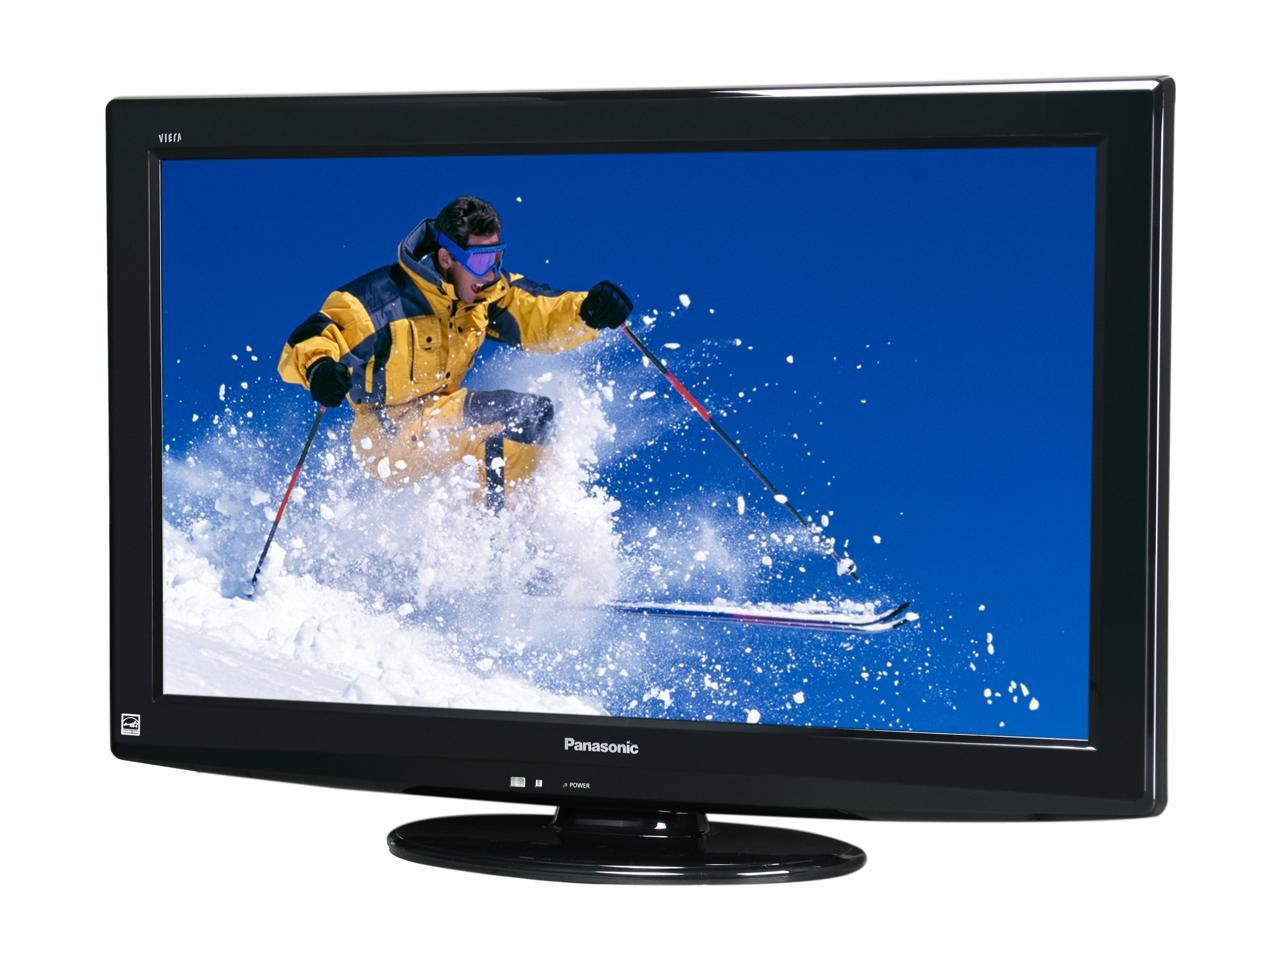  Panasonic  VIERA 32  1080p  LCD HDTV Newegg com